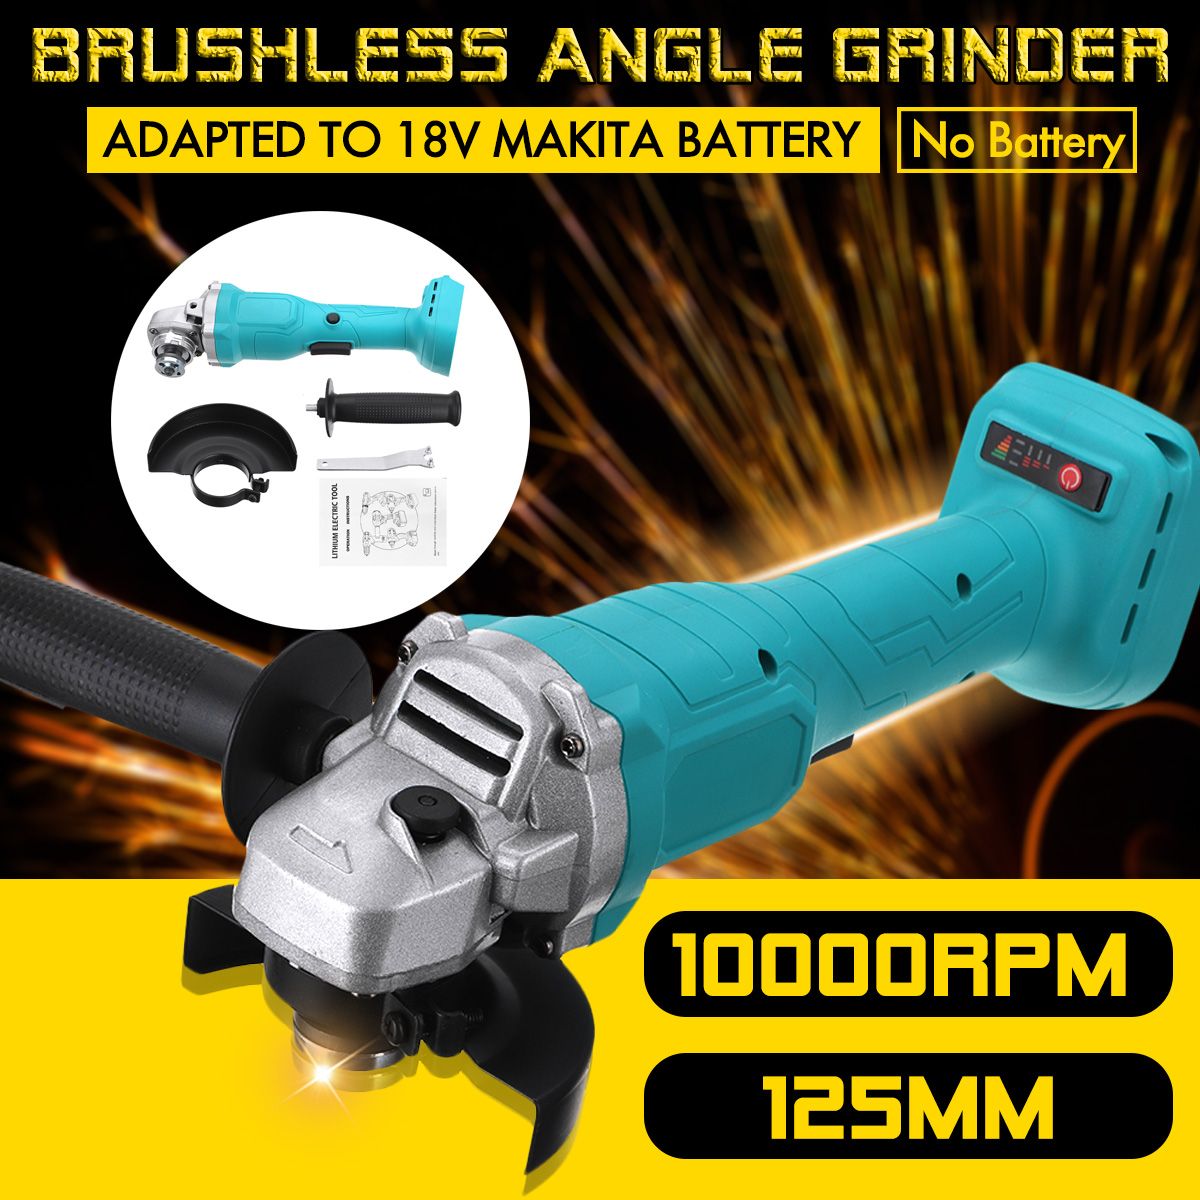 125mm-Cordless-Brushless-Angle-Grinder-Polishing-Grinding-Tool-For-Makita-18V-Battery-1746970